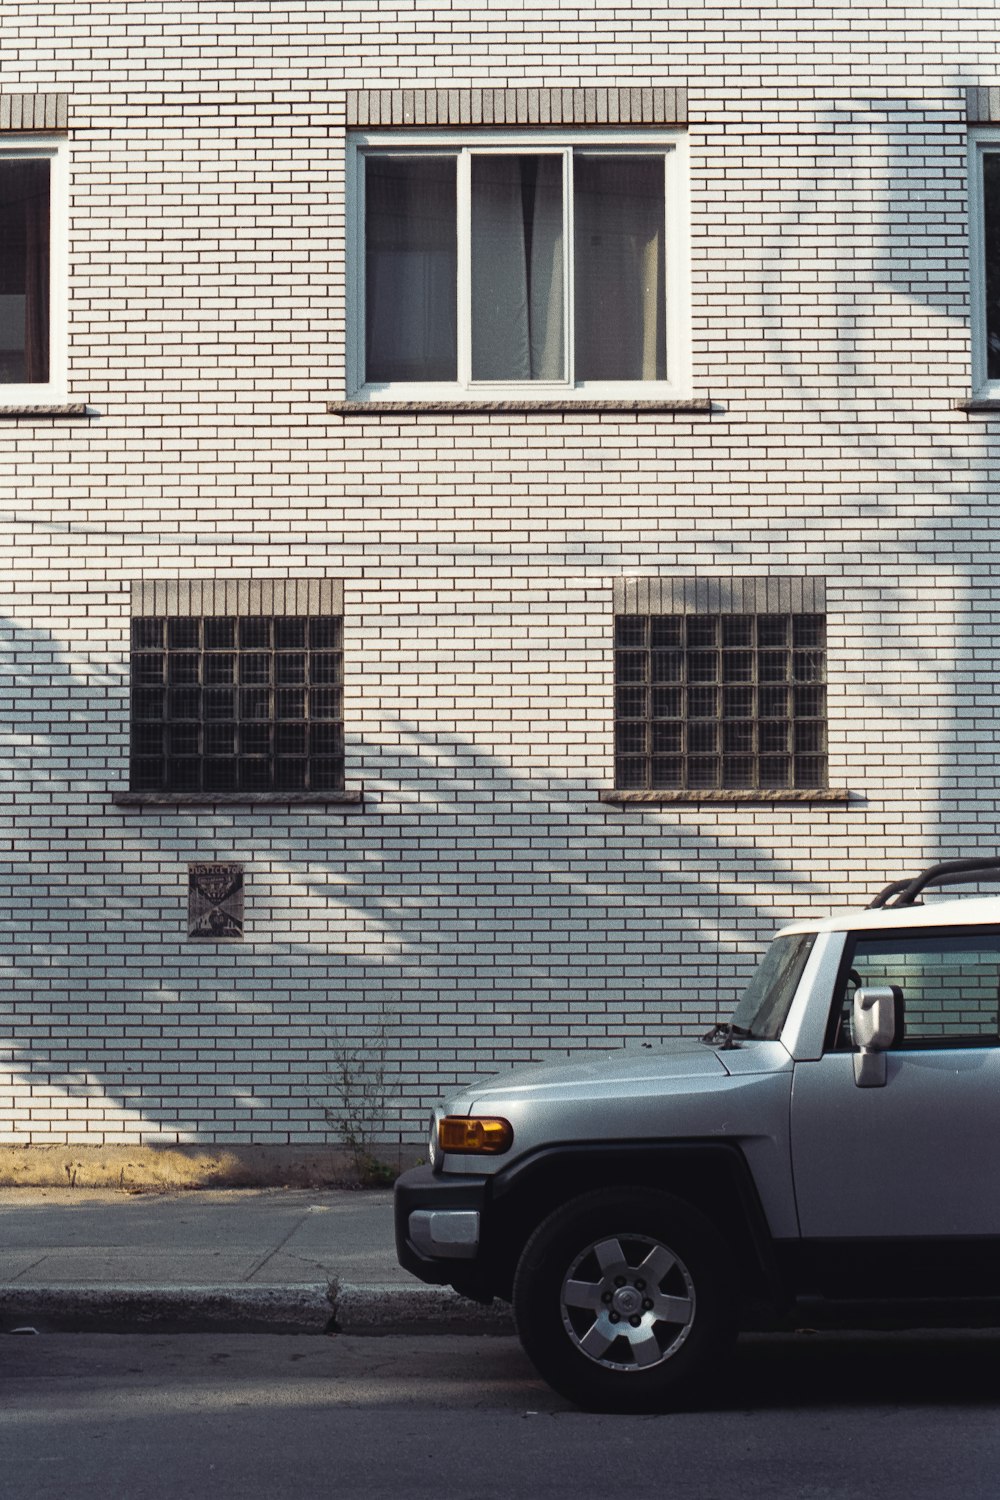 Coche gris aparcado junto a un edificio de ladrillos marrones